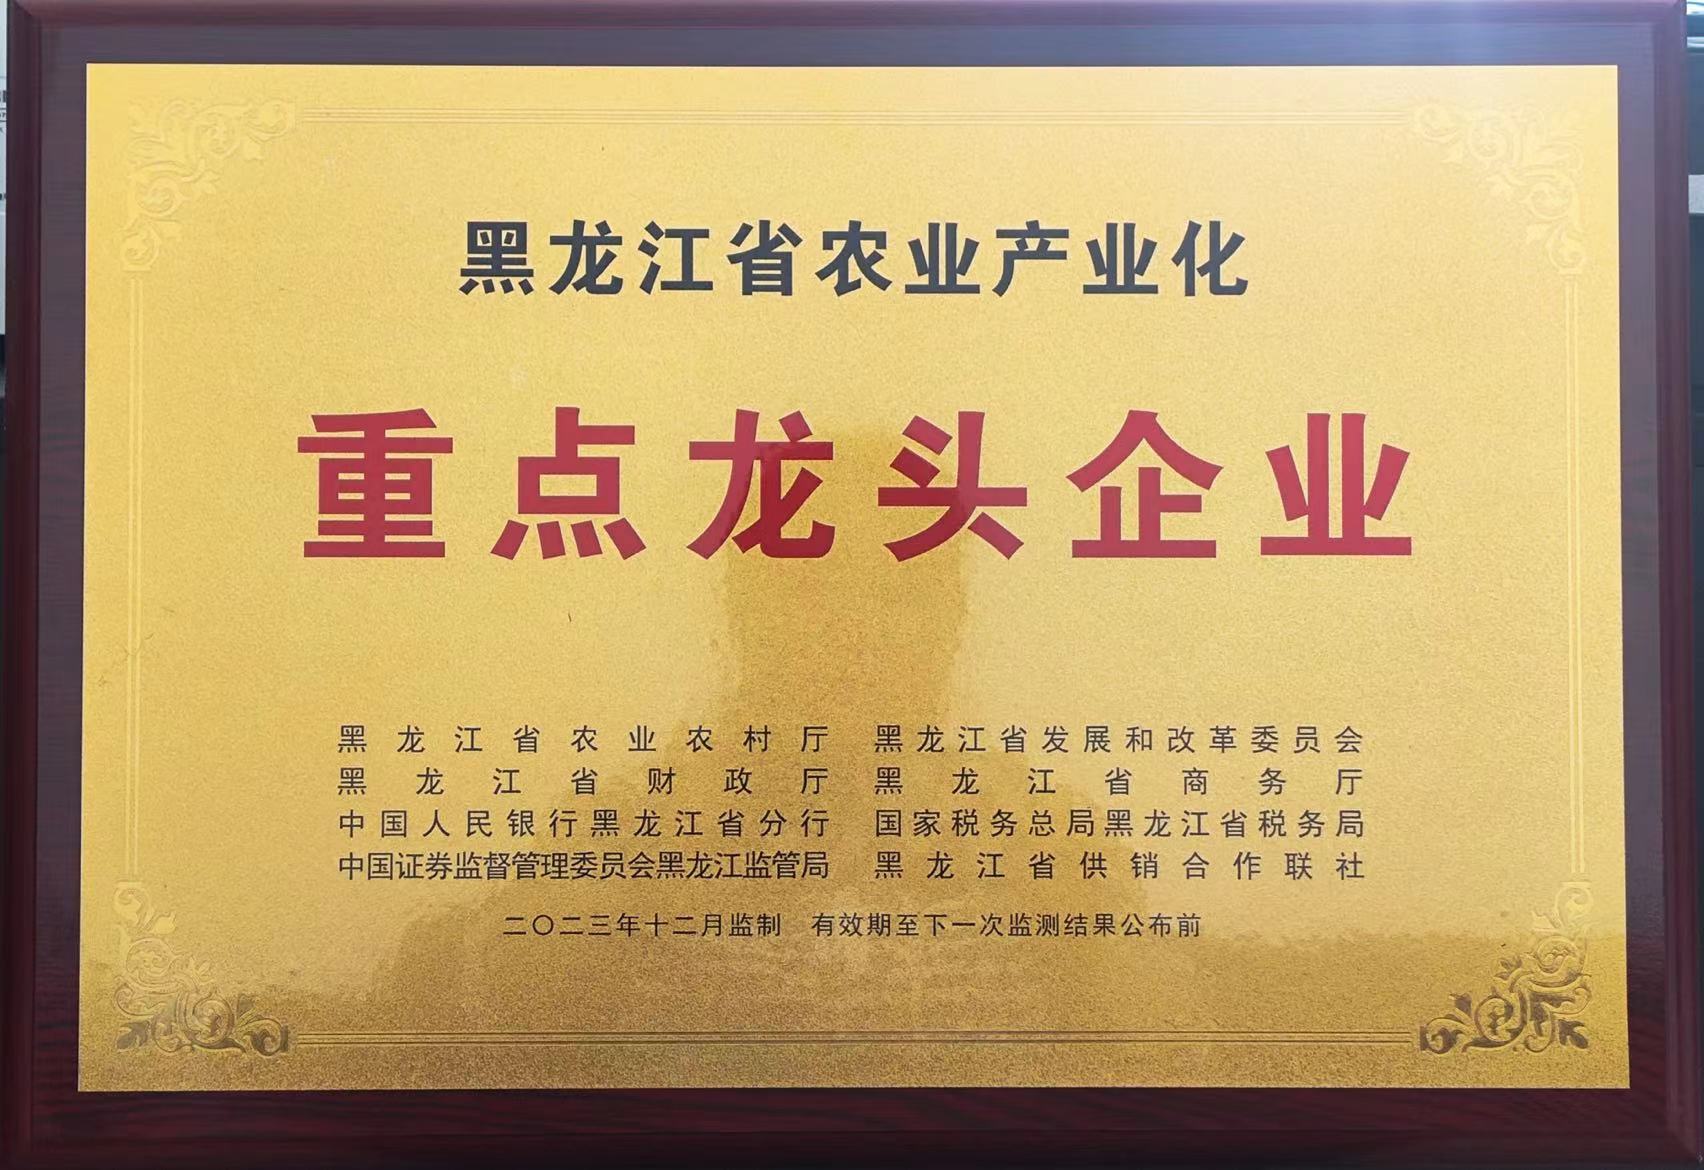 黑龙江省农业产业化重点龙头企业